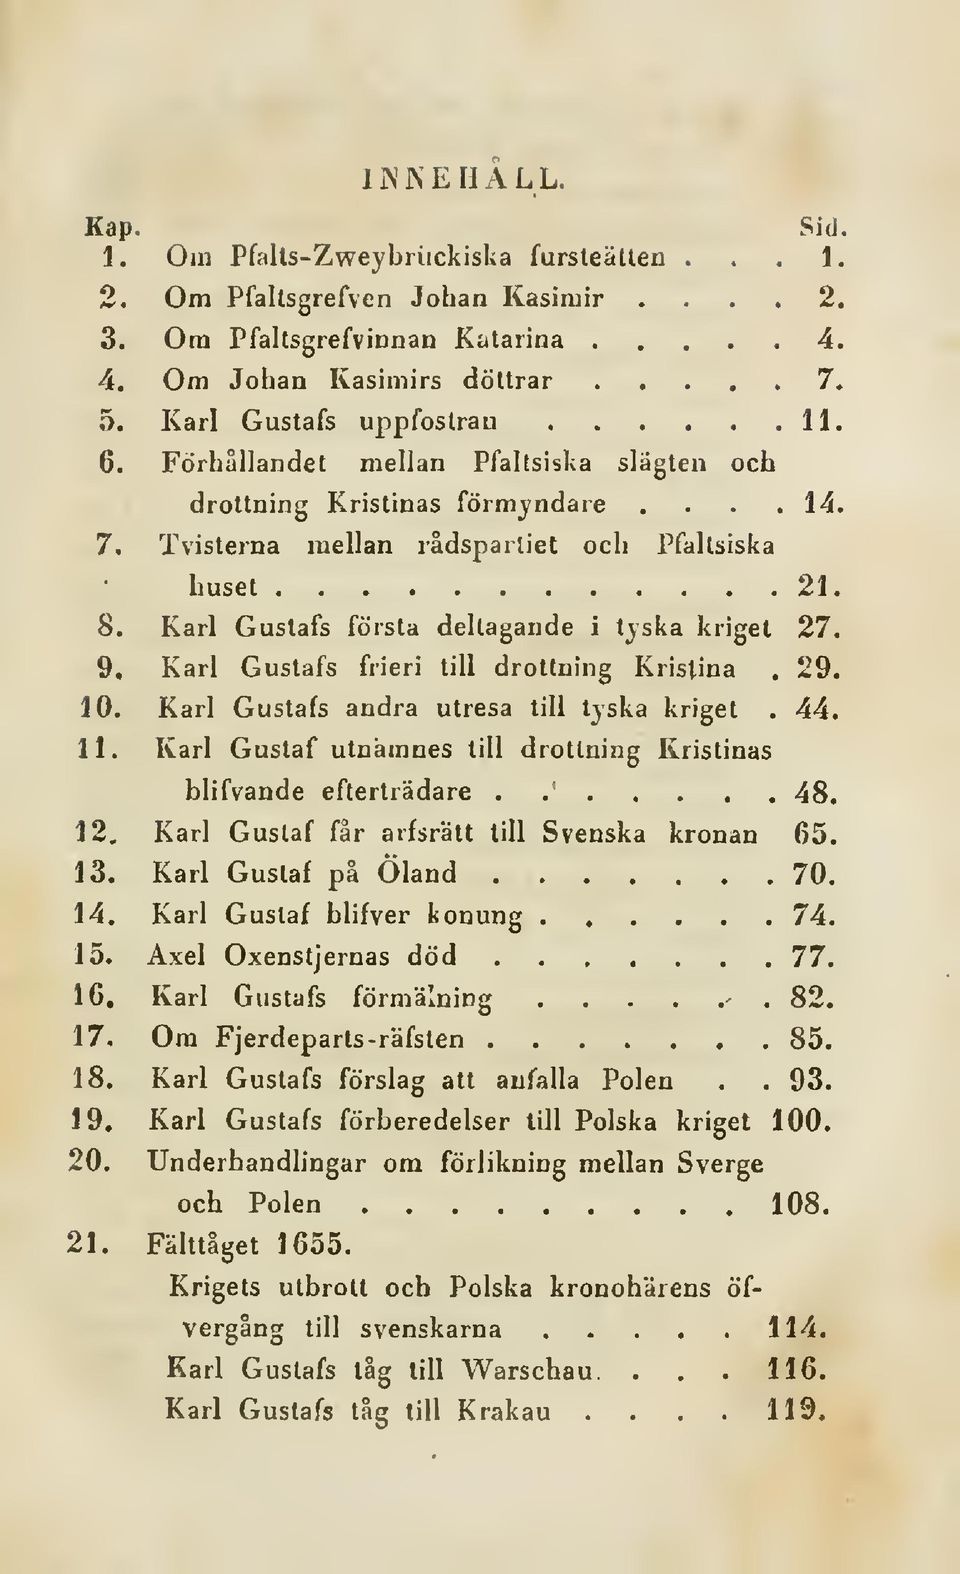 Karl Gustafs första deltagande i tjska kriget 27. 9. Karl Gustafs frieri till drottning Kristina. 29. 10. Karl Gustafs andra utresa till tjska kriget. 44. 11.